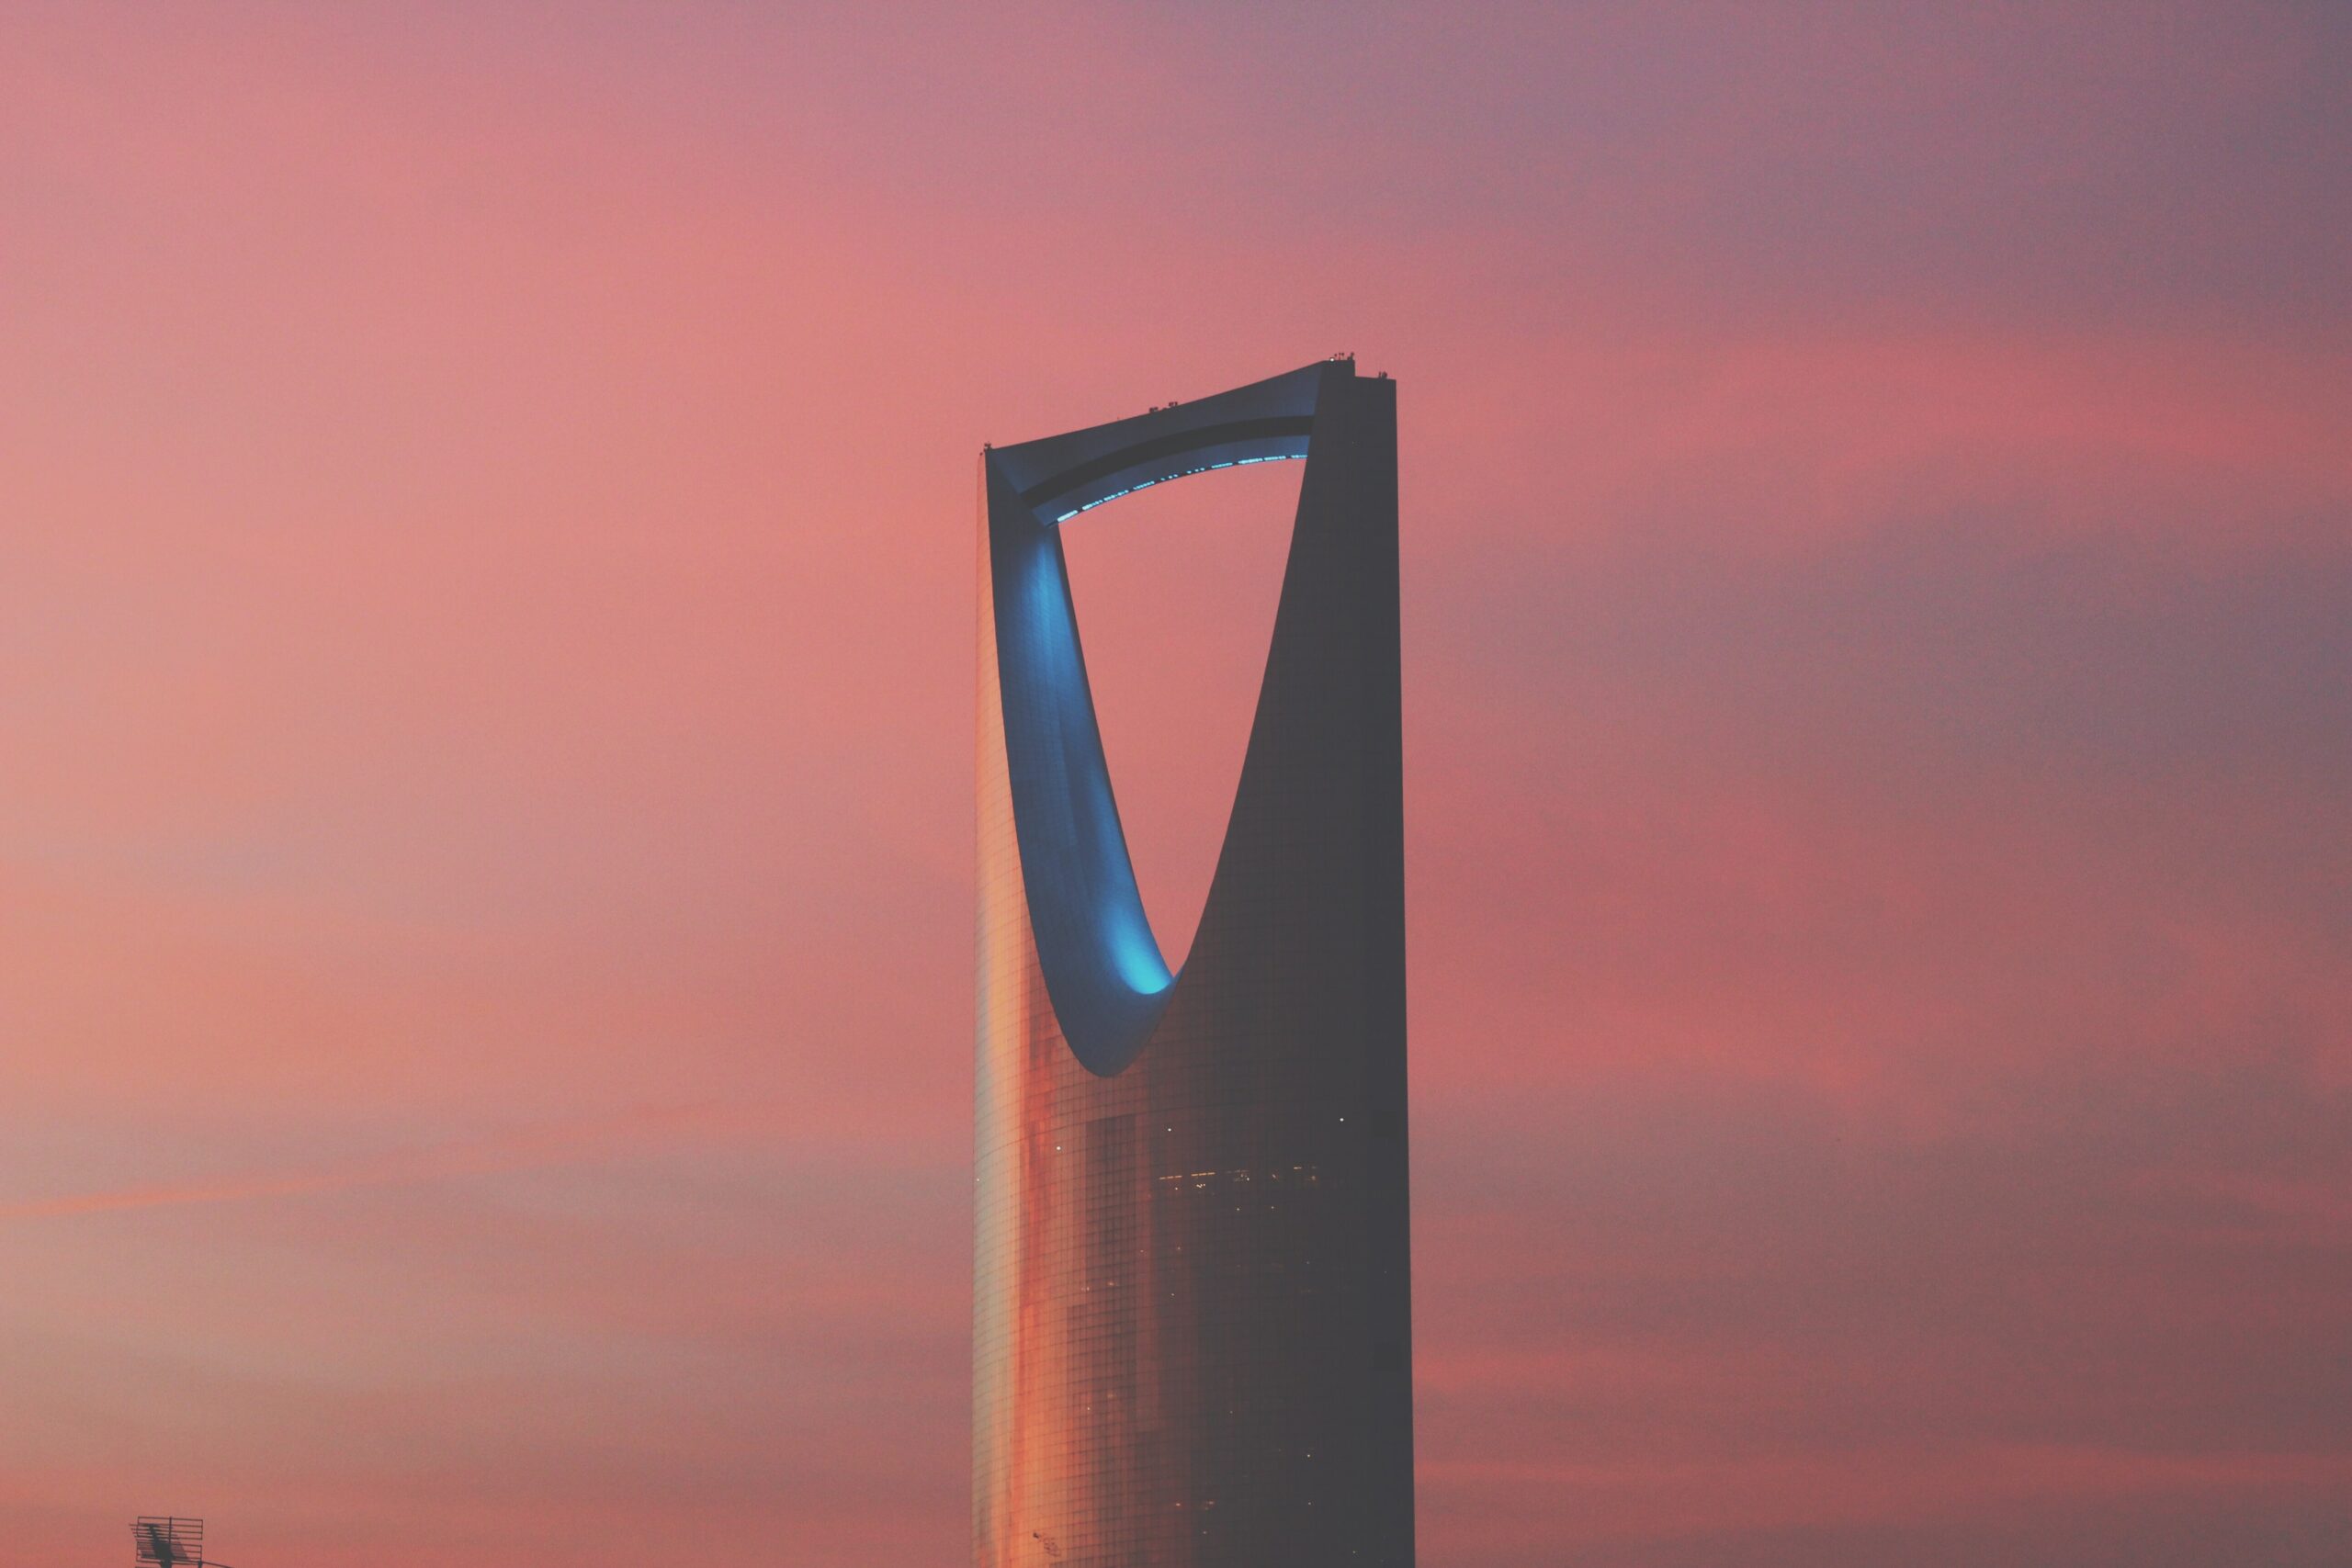 Kingdom Centre, a 99-story, 302.3 m (992 ft) skyscraper in Riyadh, Saudi Arabia